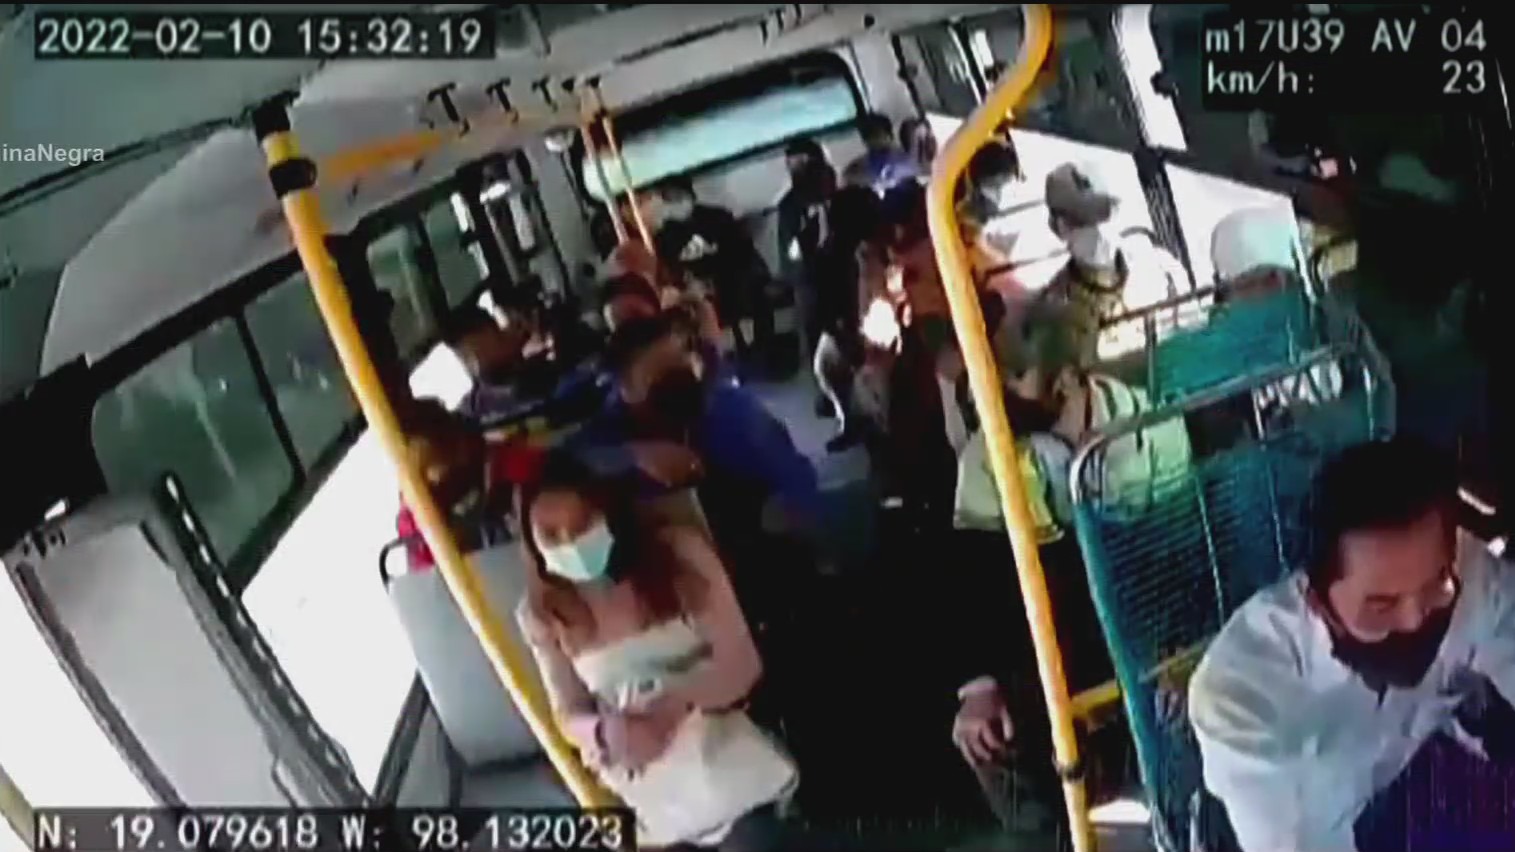 video asaltantes impiden a abuelita bajar de unidad del transporte publico en puebla